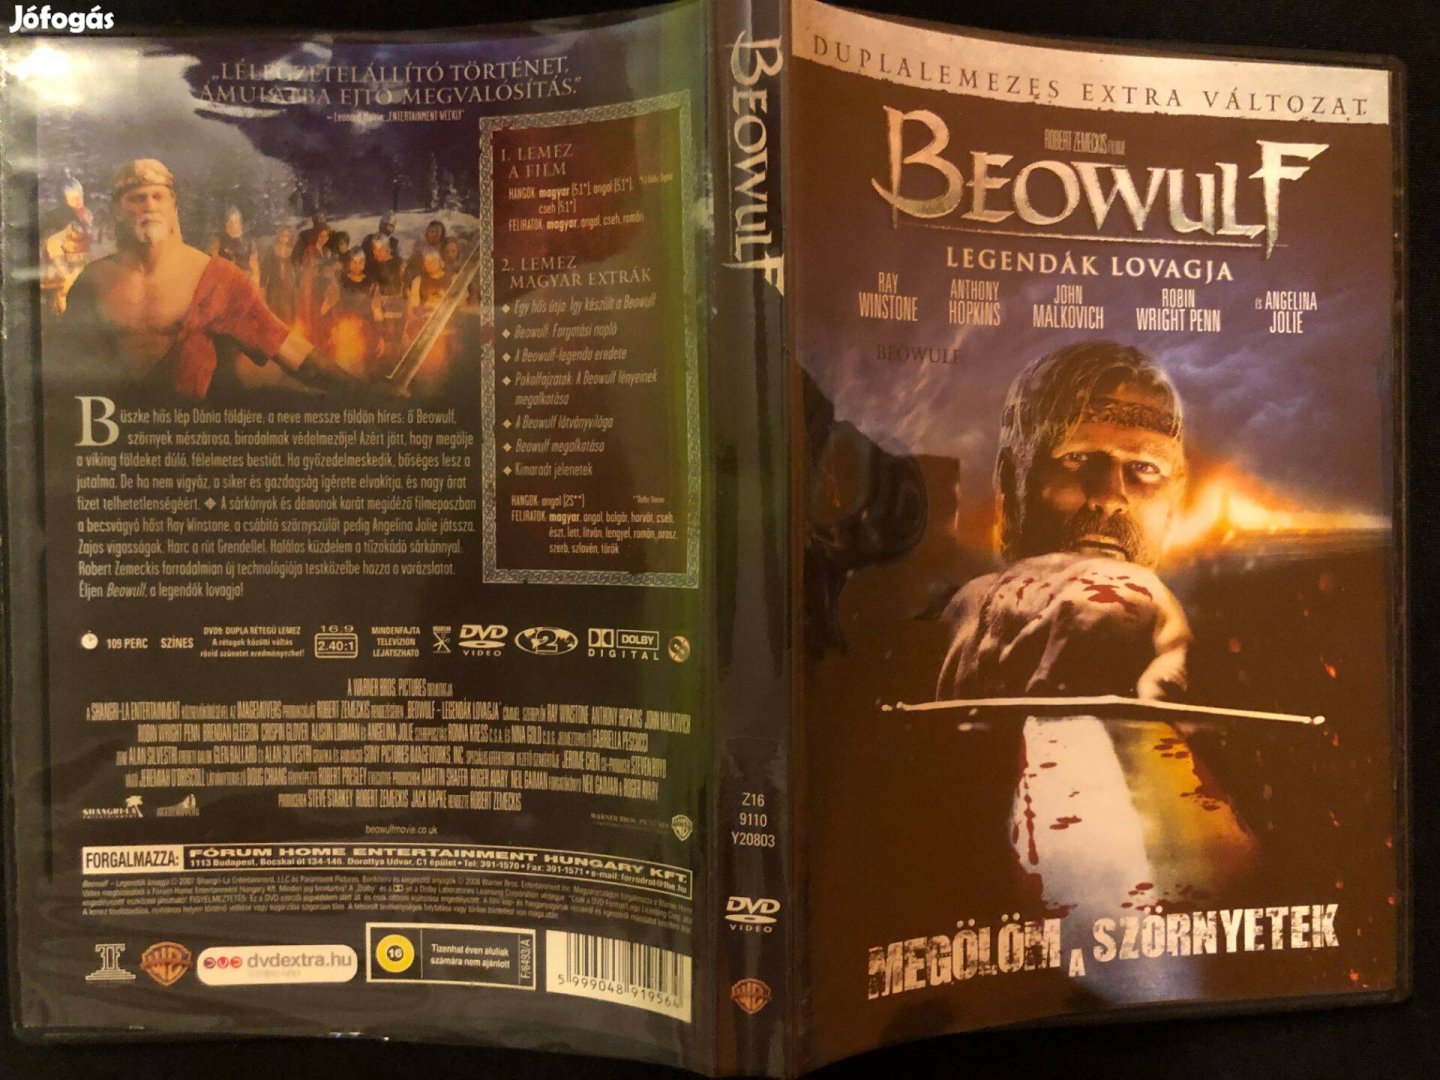 Beowulf DVD Legendák lovagja(karcmentes, duplalemezes extra változat